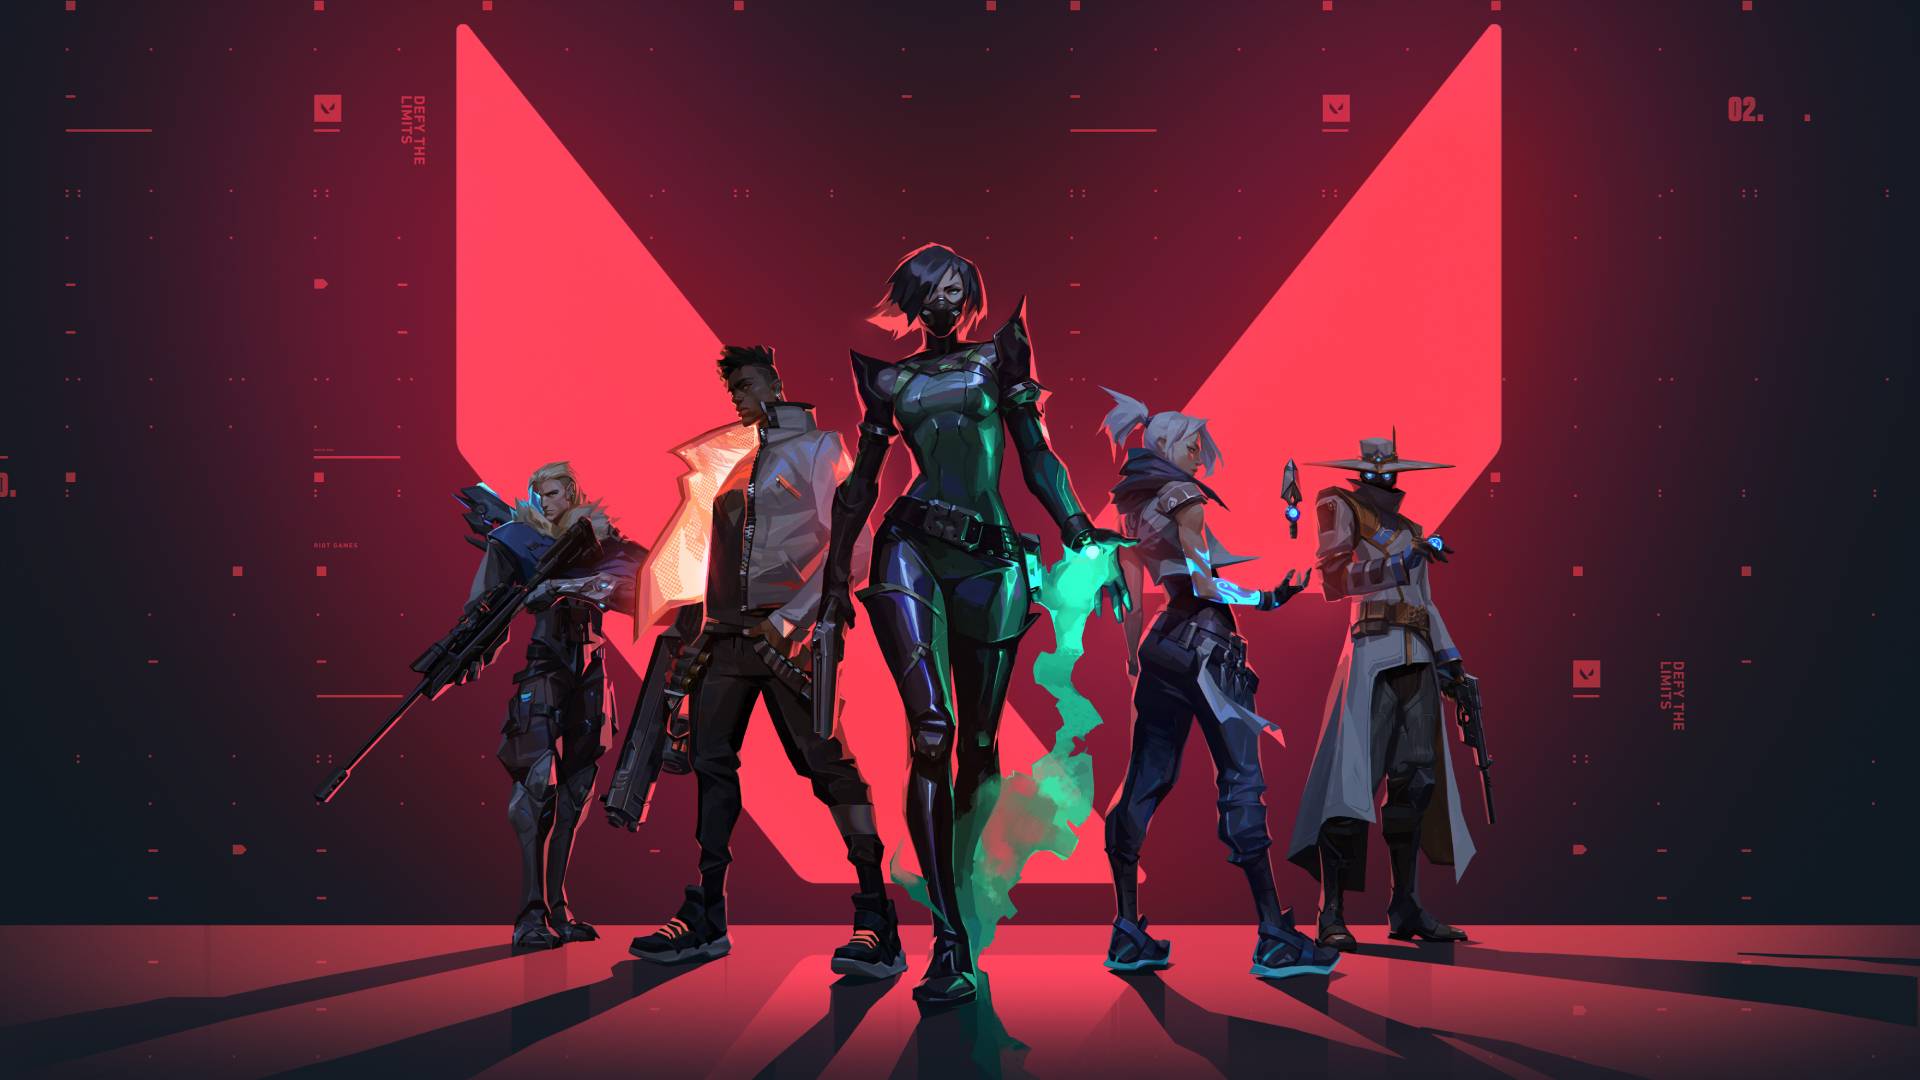 Un grupo de personajes de dibujos animados se encuentran en un grupo de cinco frente a una enorme V roja brillante sobre un fondo estilo Matrix.